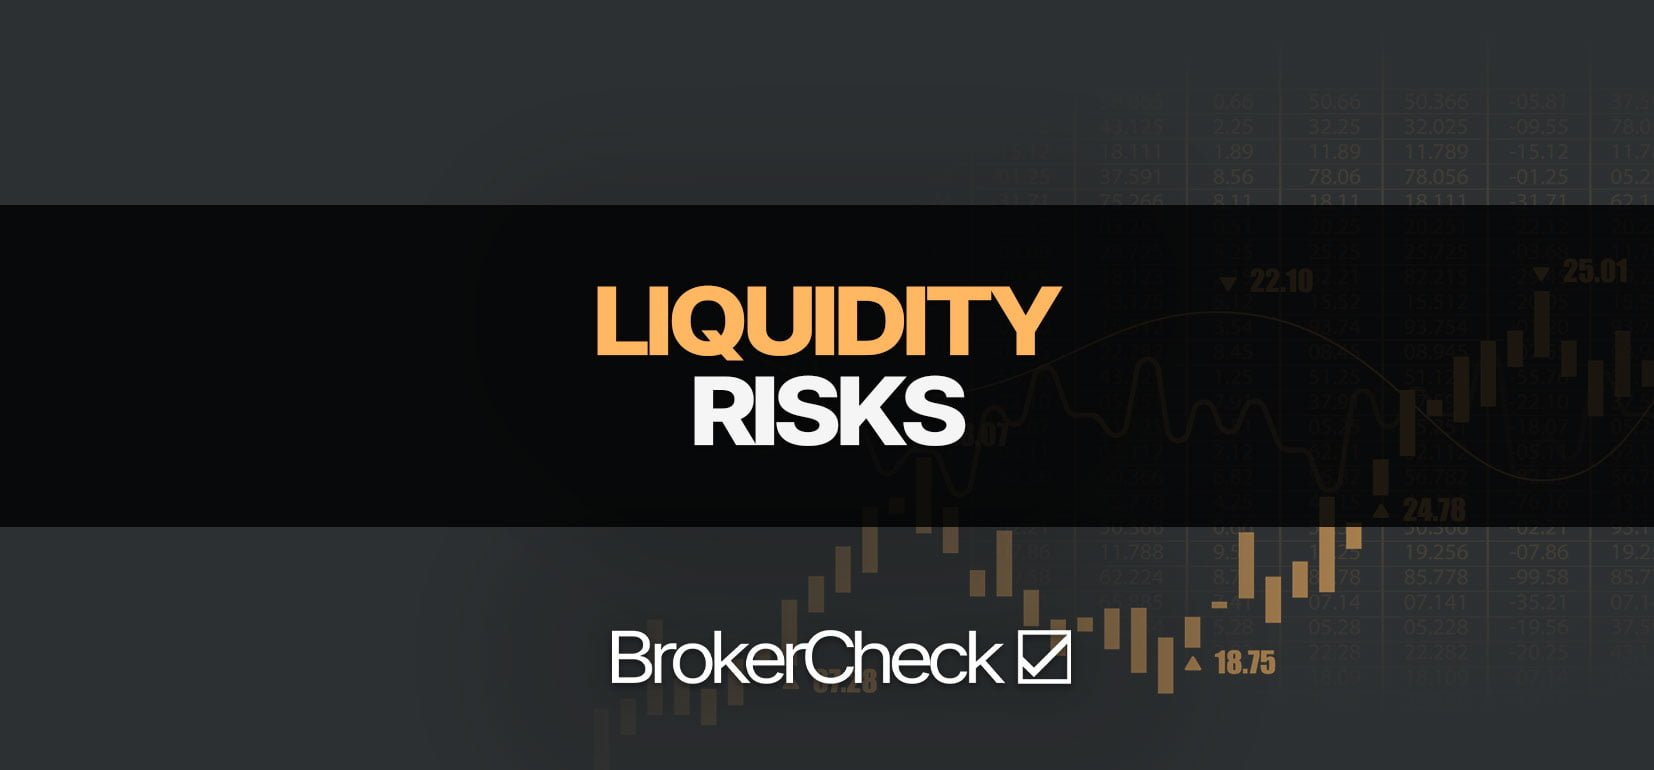 Риск ликвидности: значение, примеры, управление